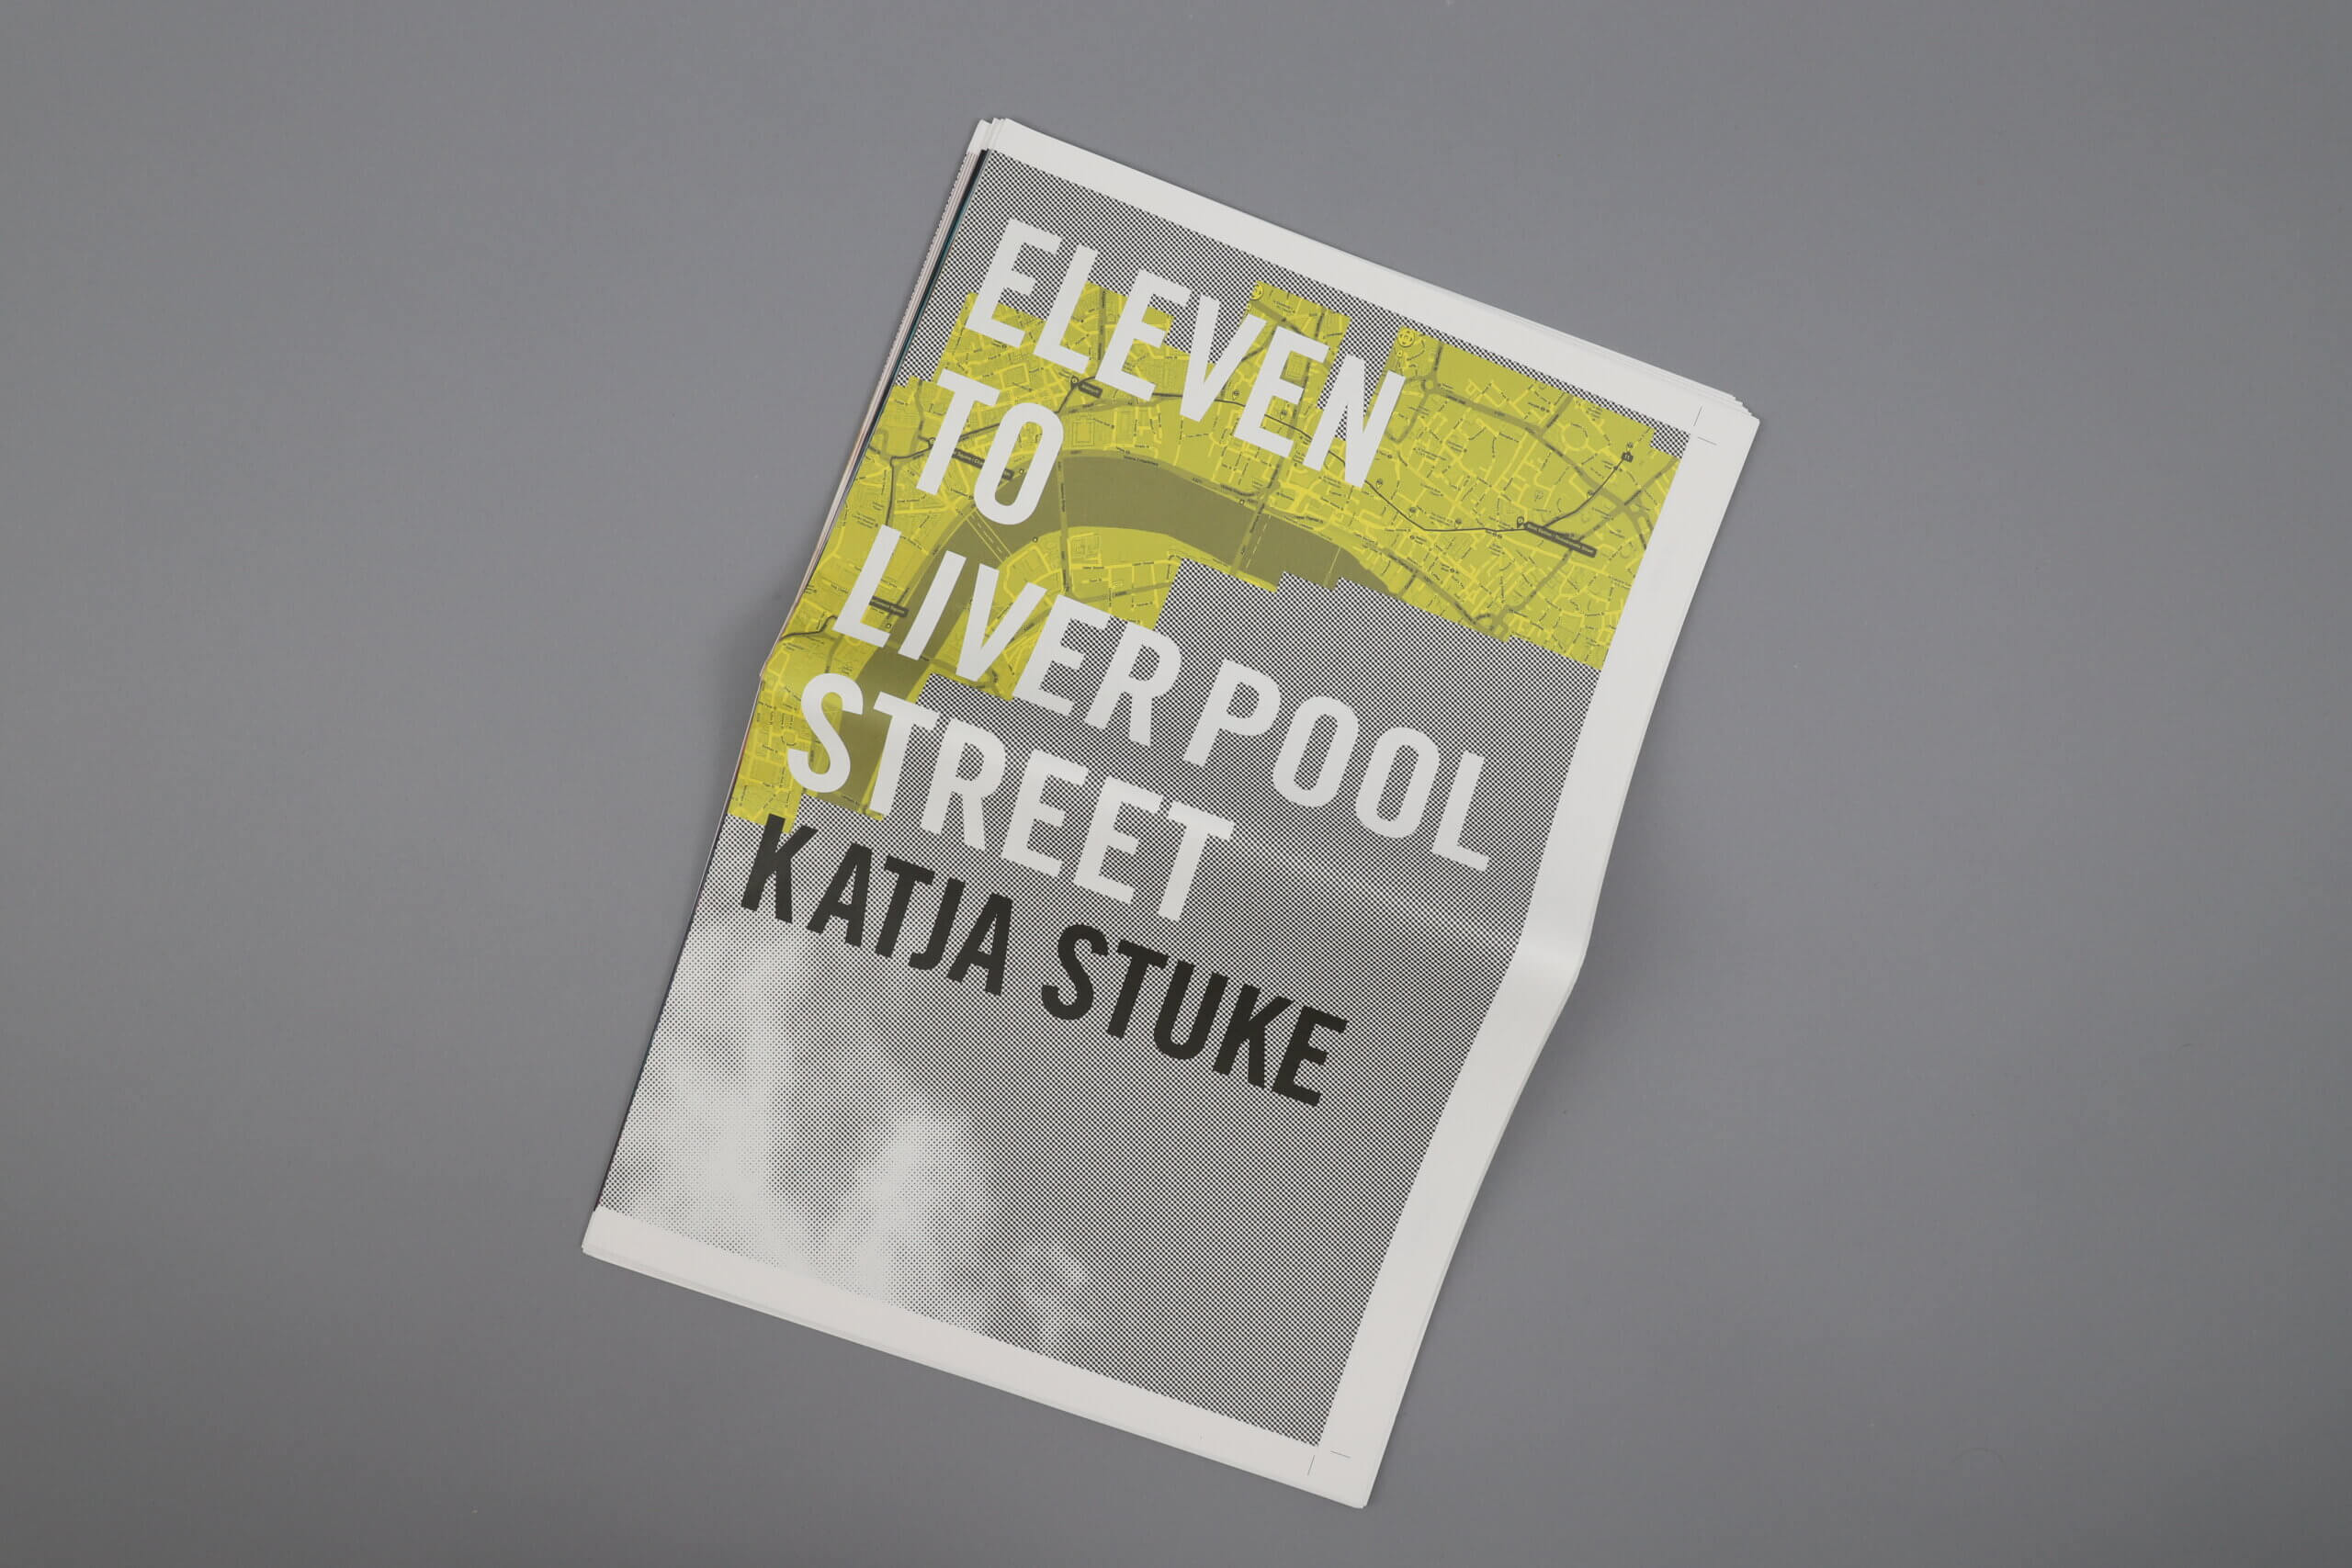 Eleven-to-Liverpool-Street-Katja-Stuke-cover